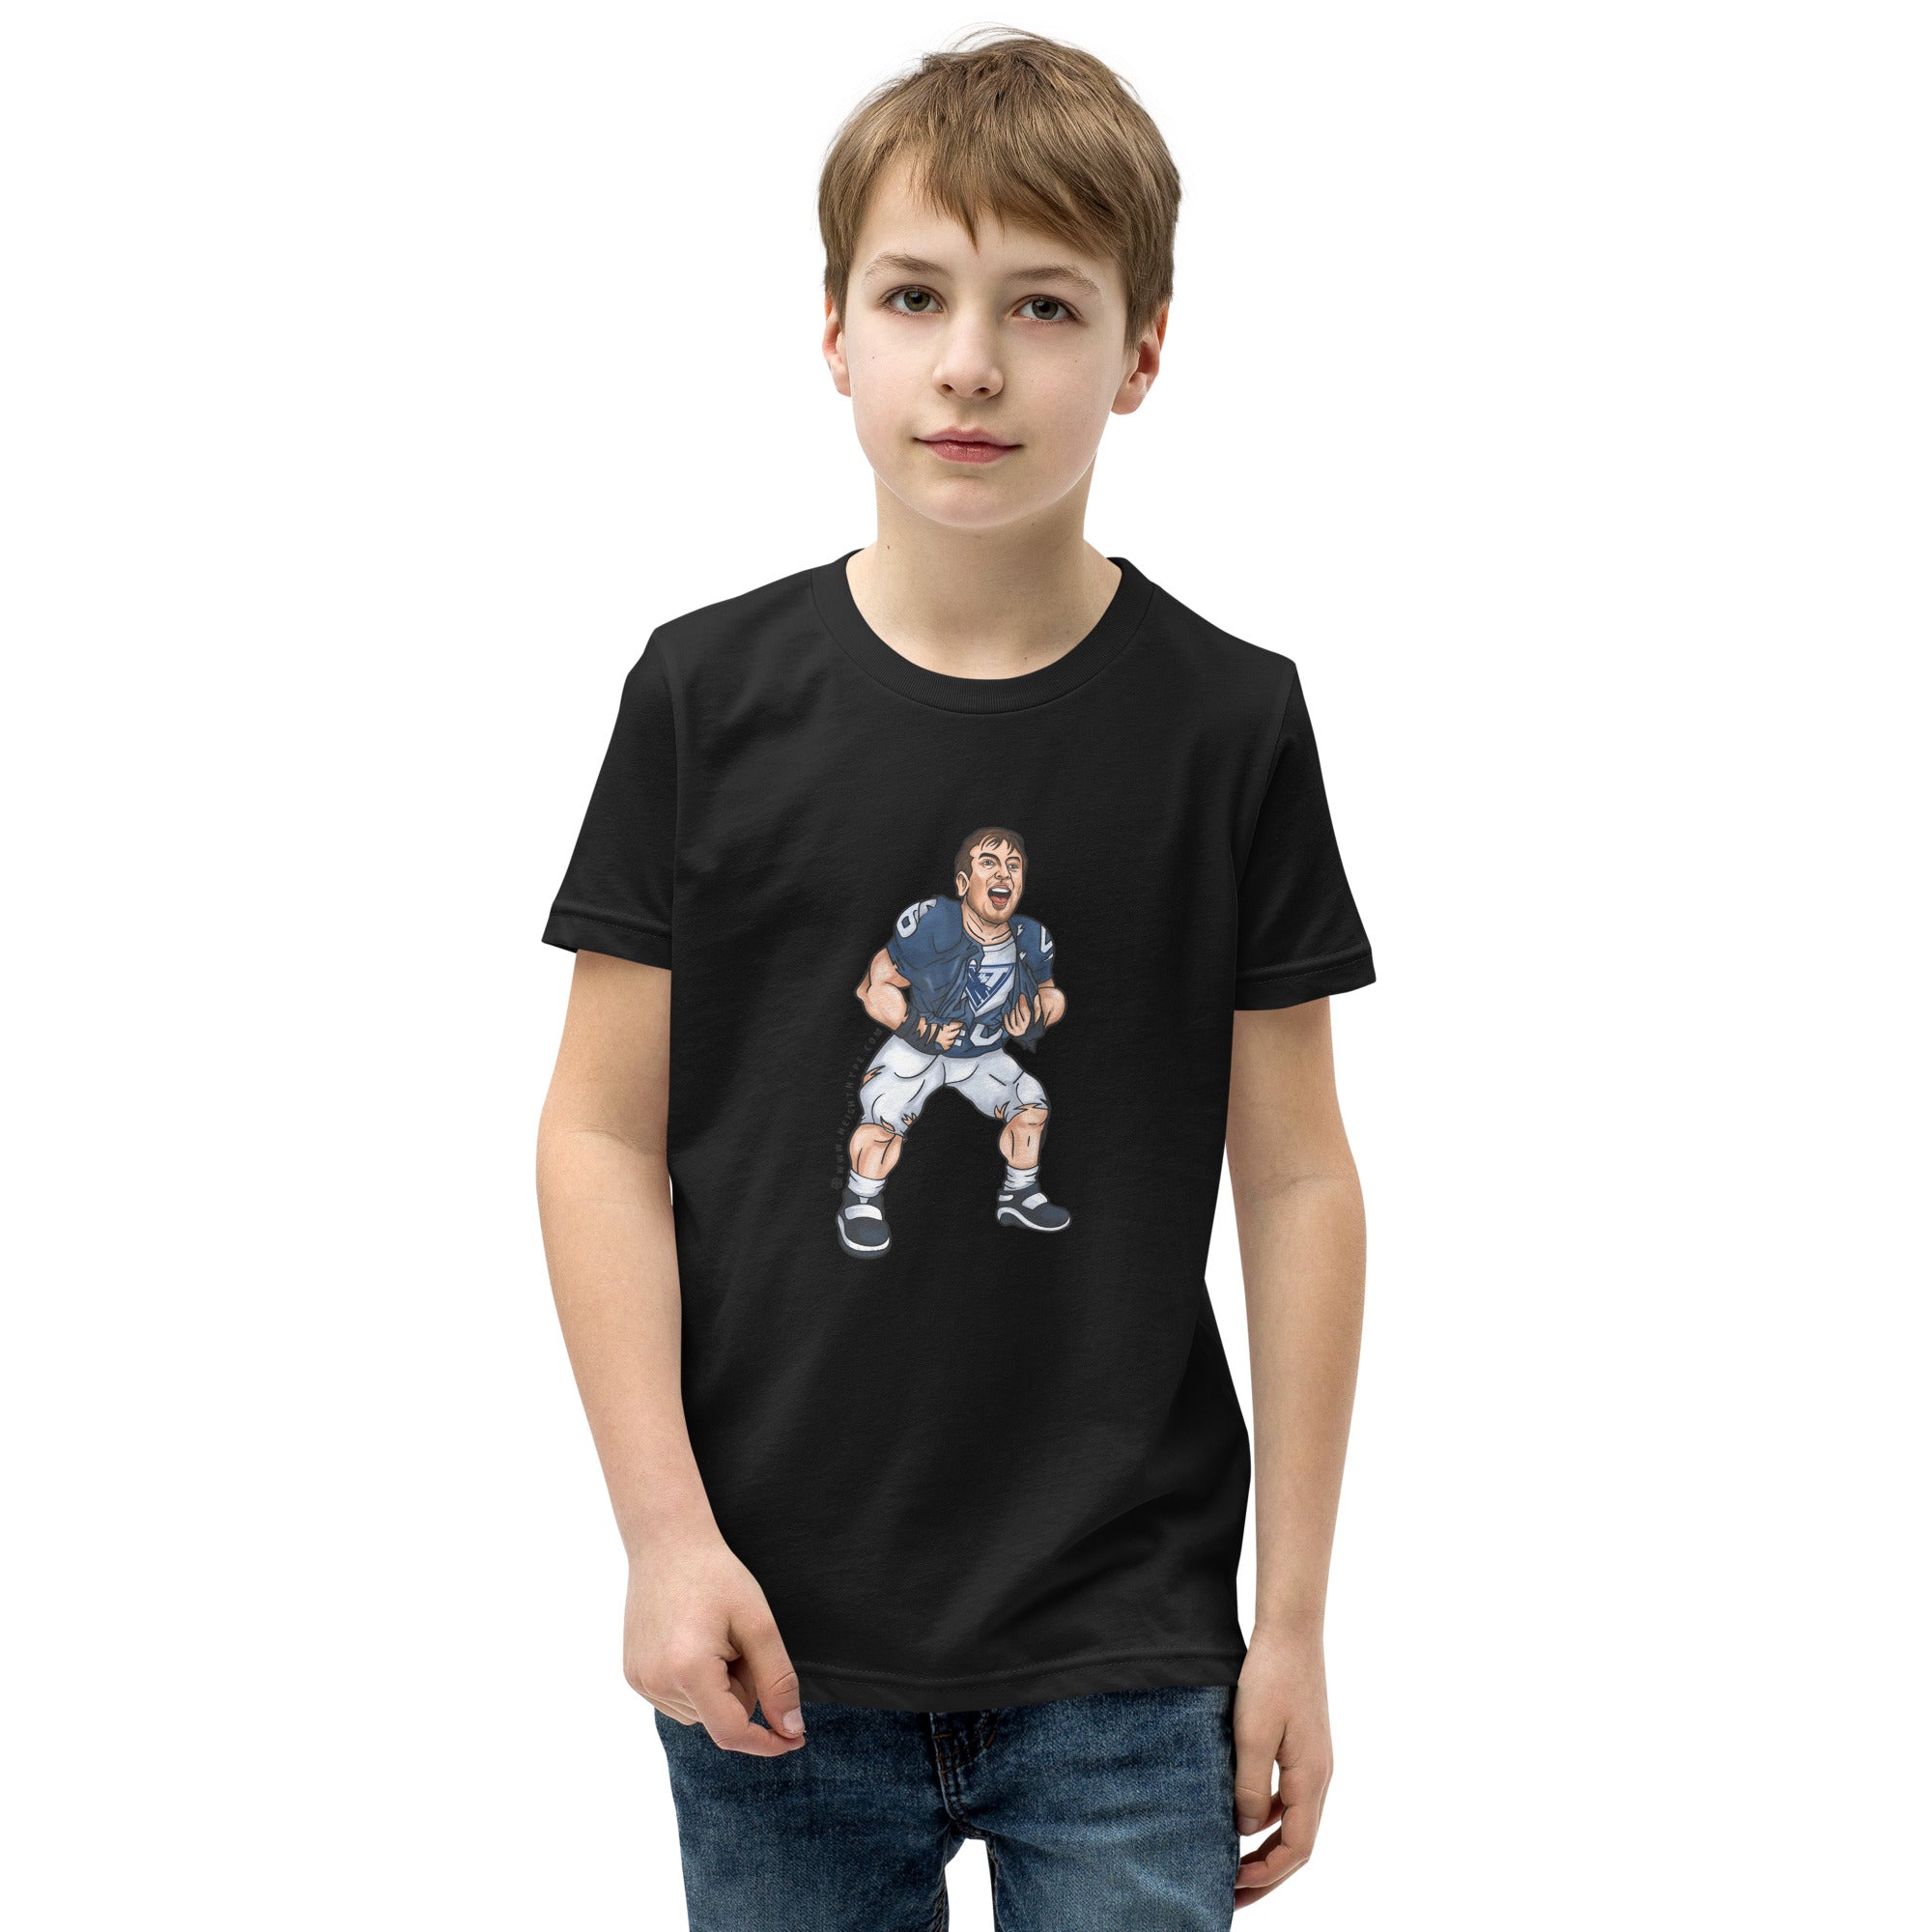 Nick Tarburton Graphic Tee - Youth Short Sleeve T-Shirt